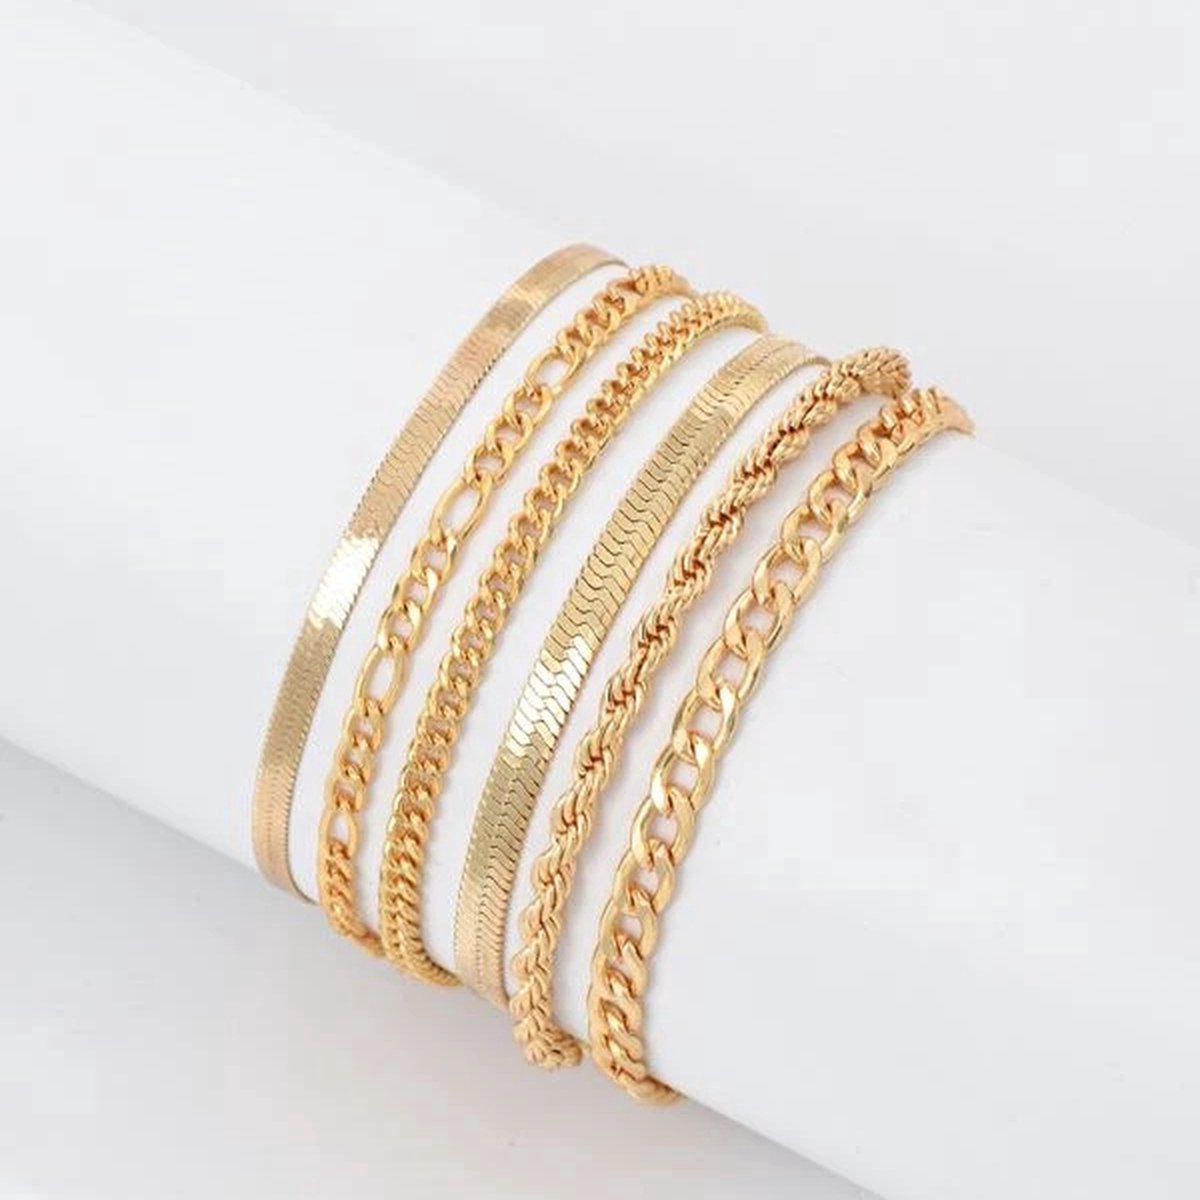 Dames Armbandenset Goudkleurig Staal - Gouden Stalen Armband - Luxe Armbandenset - Modieuze Gouden Armband - Stijlvol Goud Armbandje voor Vrouwen - Set van 6 - Elegant Goudkleurig Stalen Design